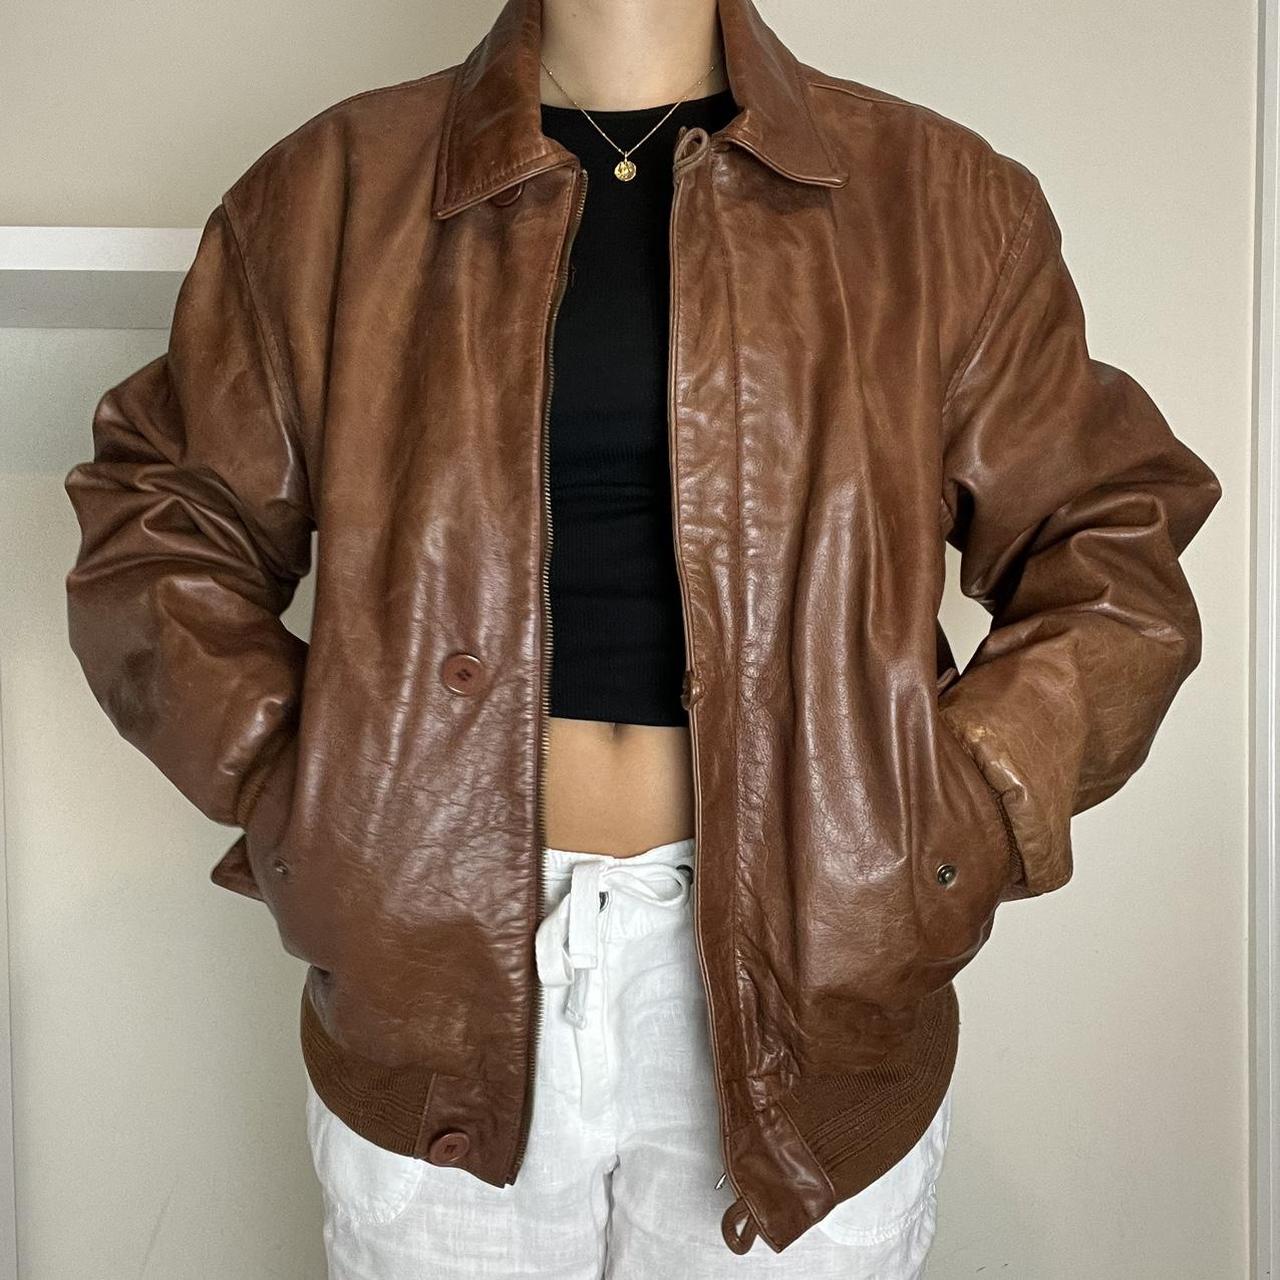 Vintage brown leather bomber jacket Vintage 90s... - Depop